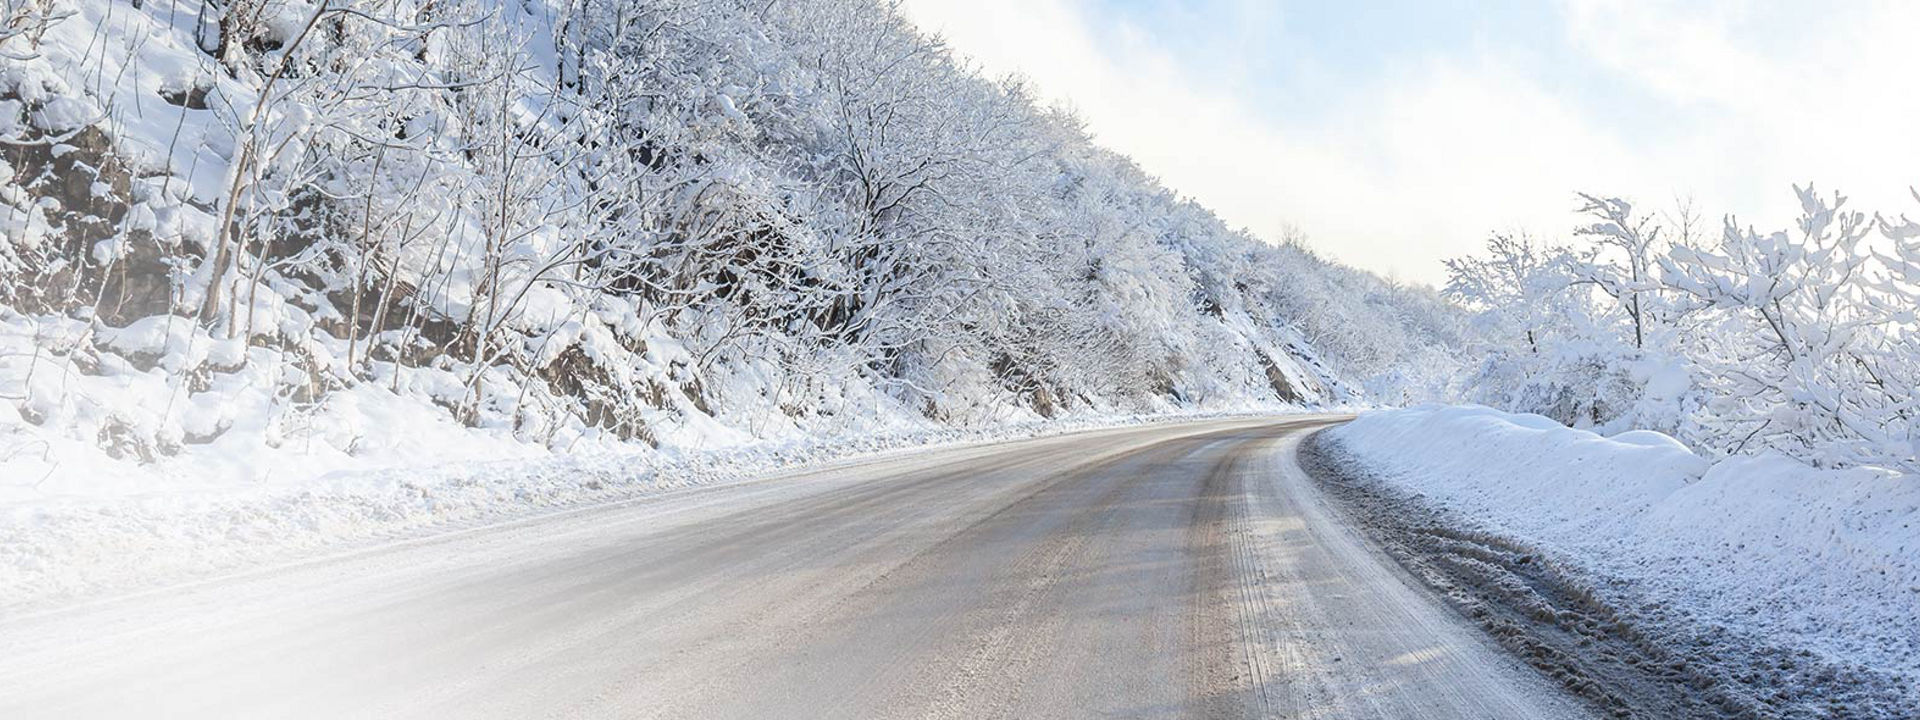 Diese Bild zeigt eine verschneite Straße mit Spuren von einem Bridgestone Winter-Lkw.